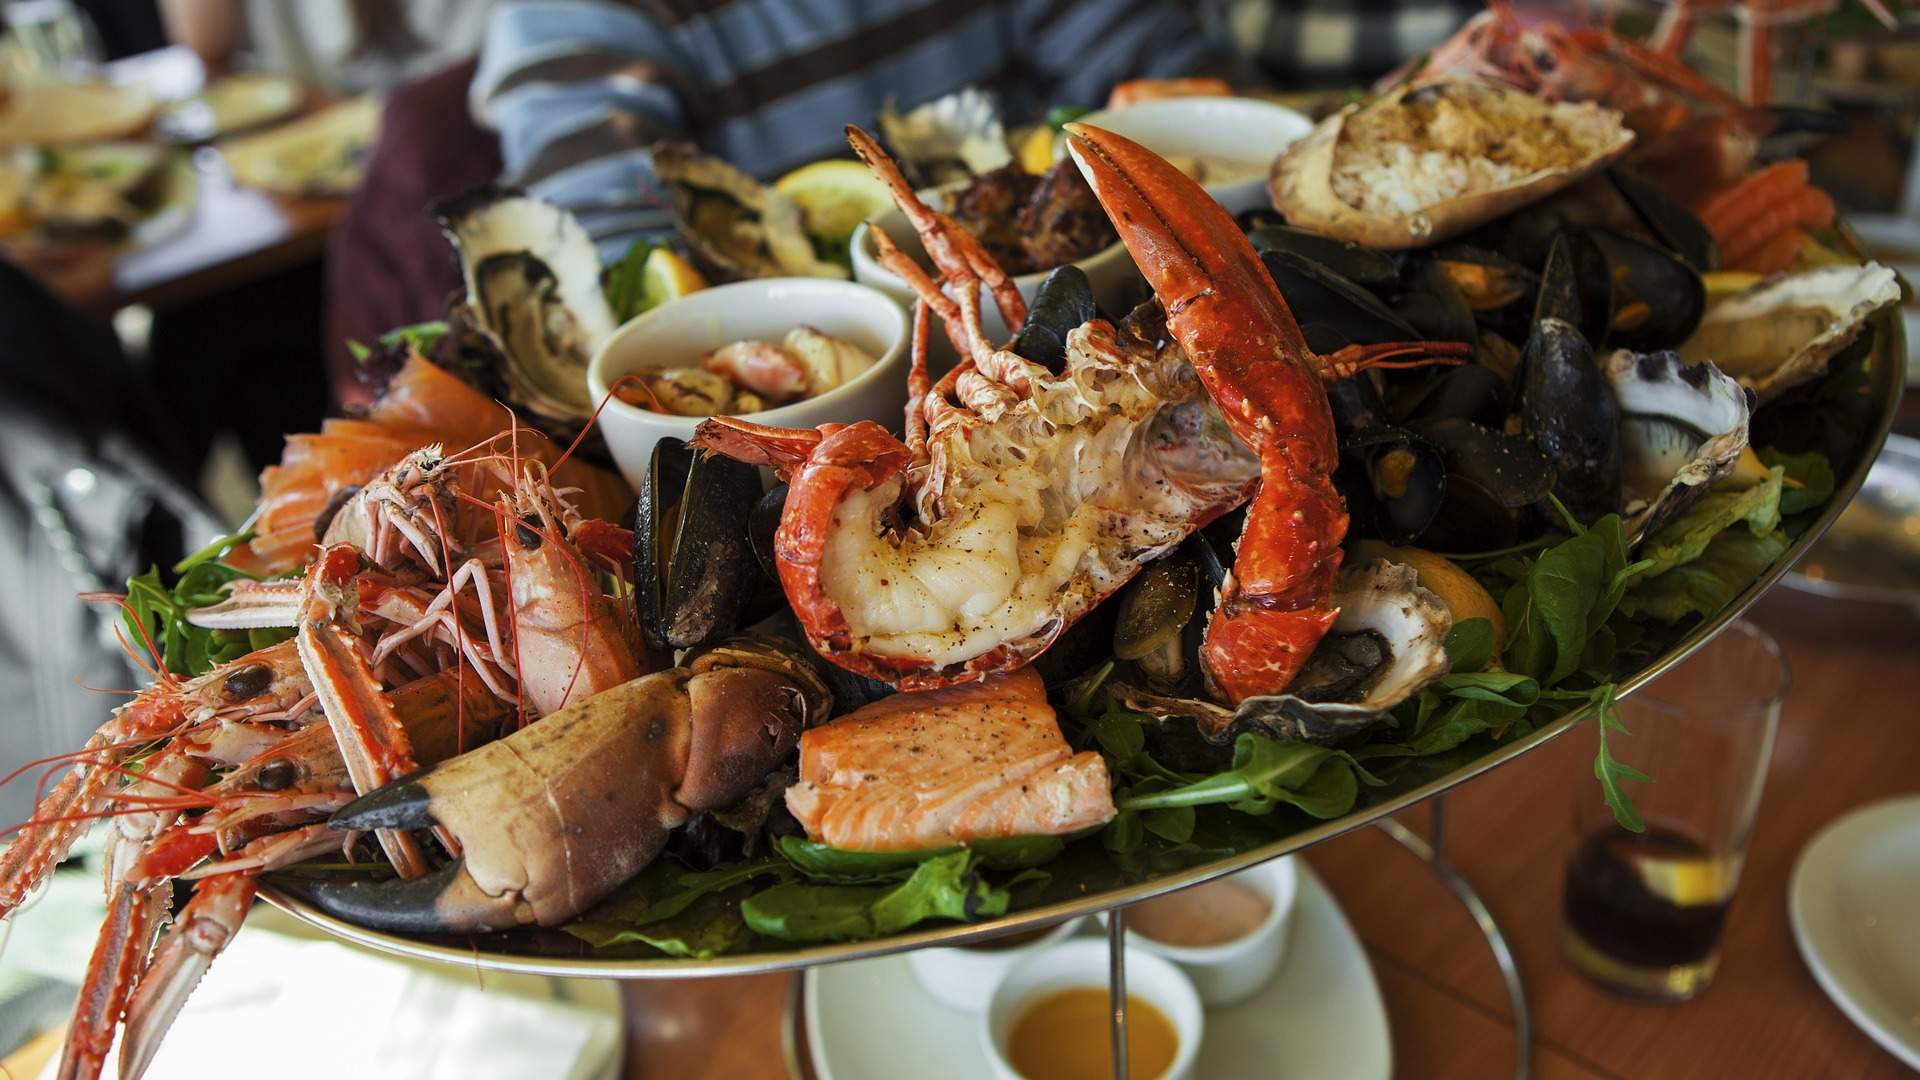 Els millors restaurants per menjar marisc: gaudeix d'aquest luxe a un preu sorprenent